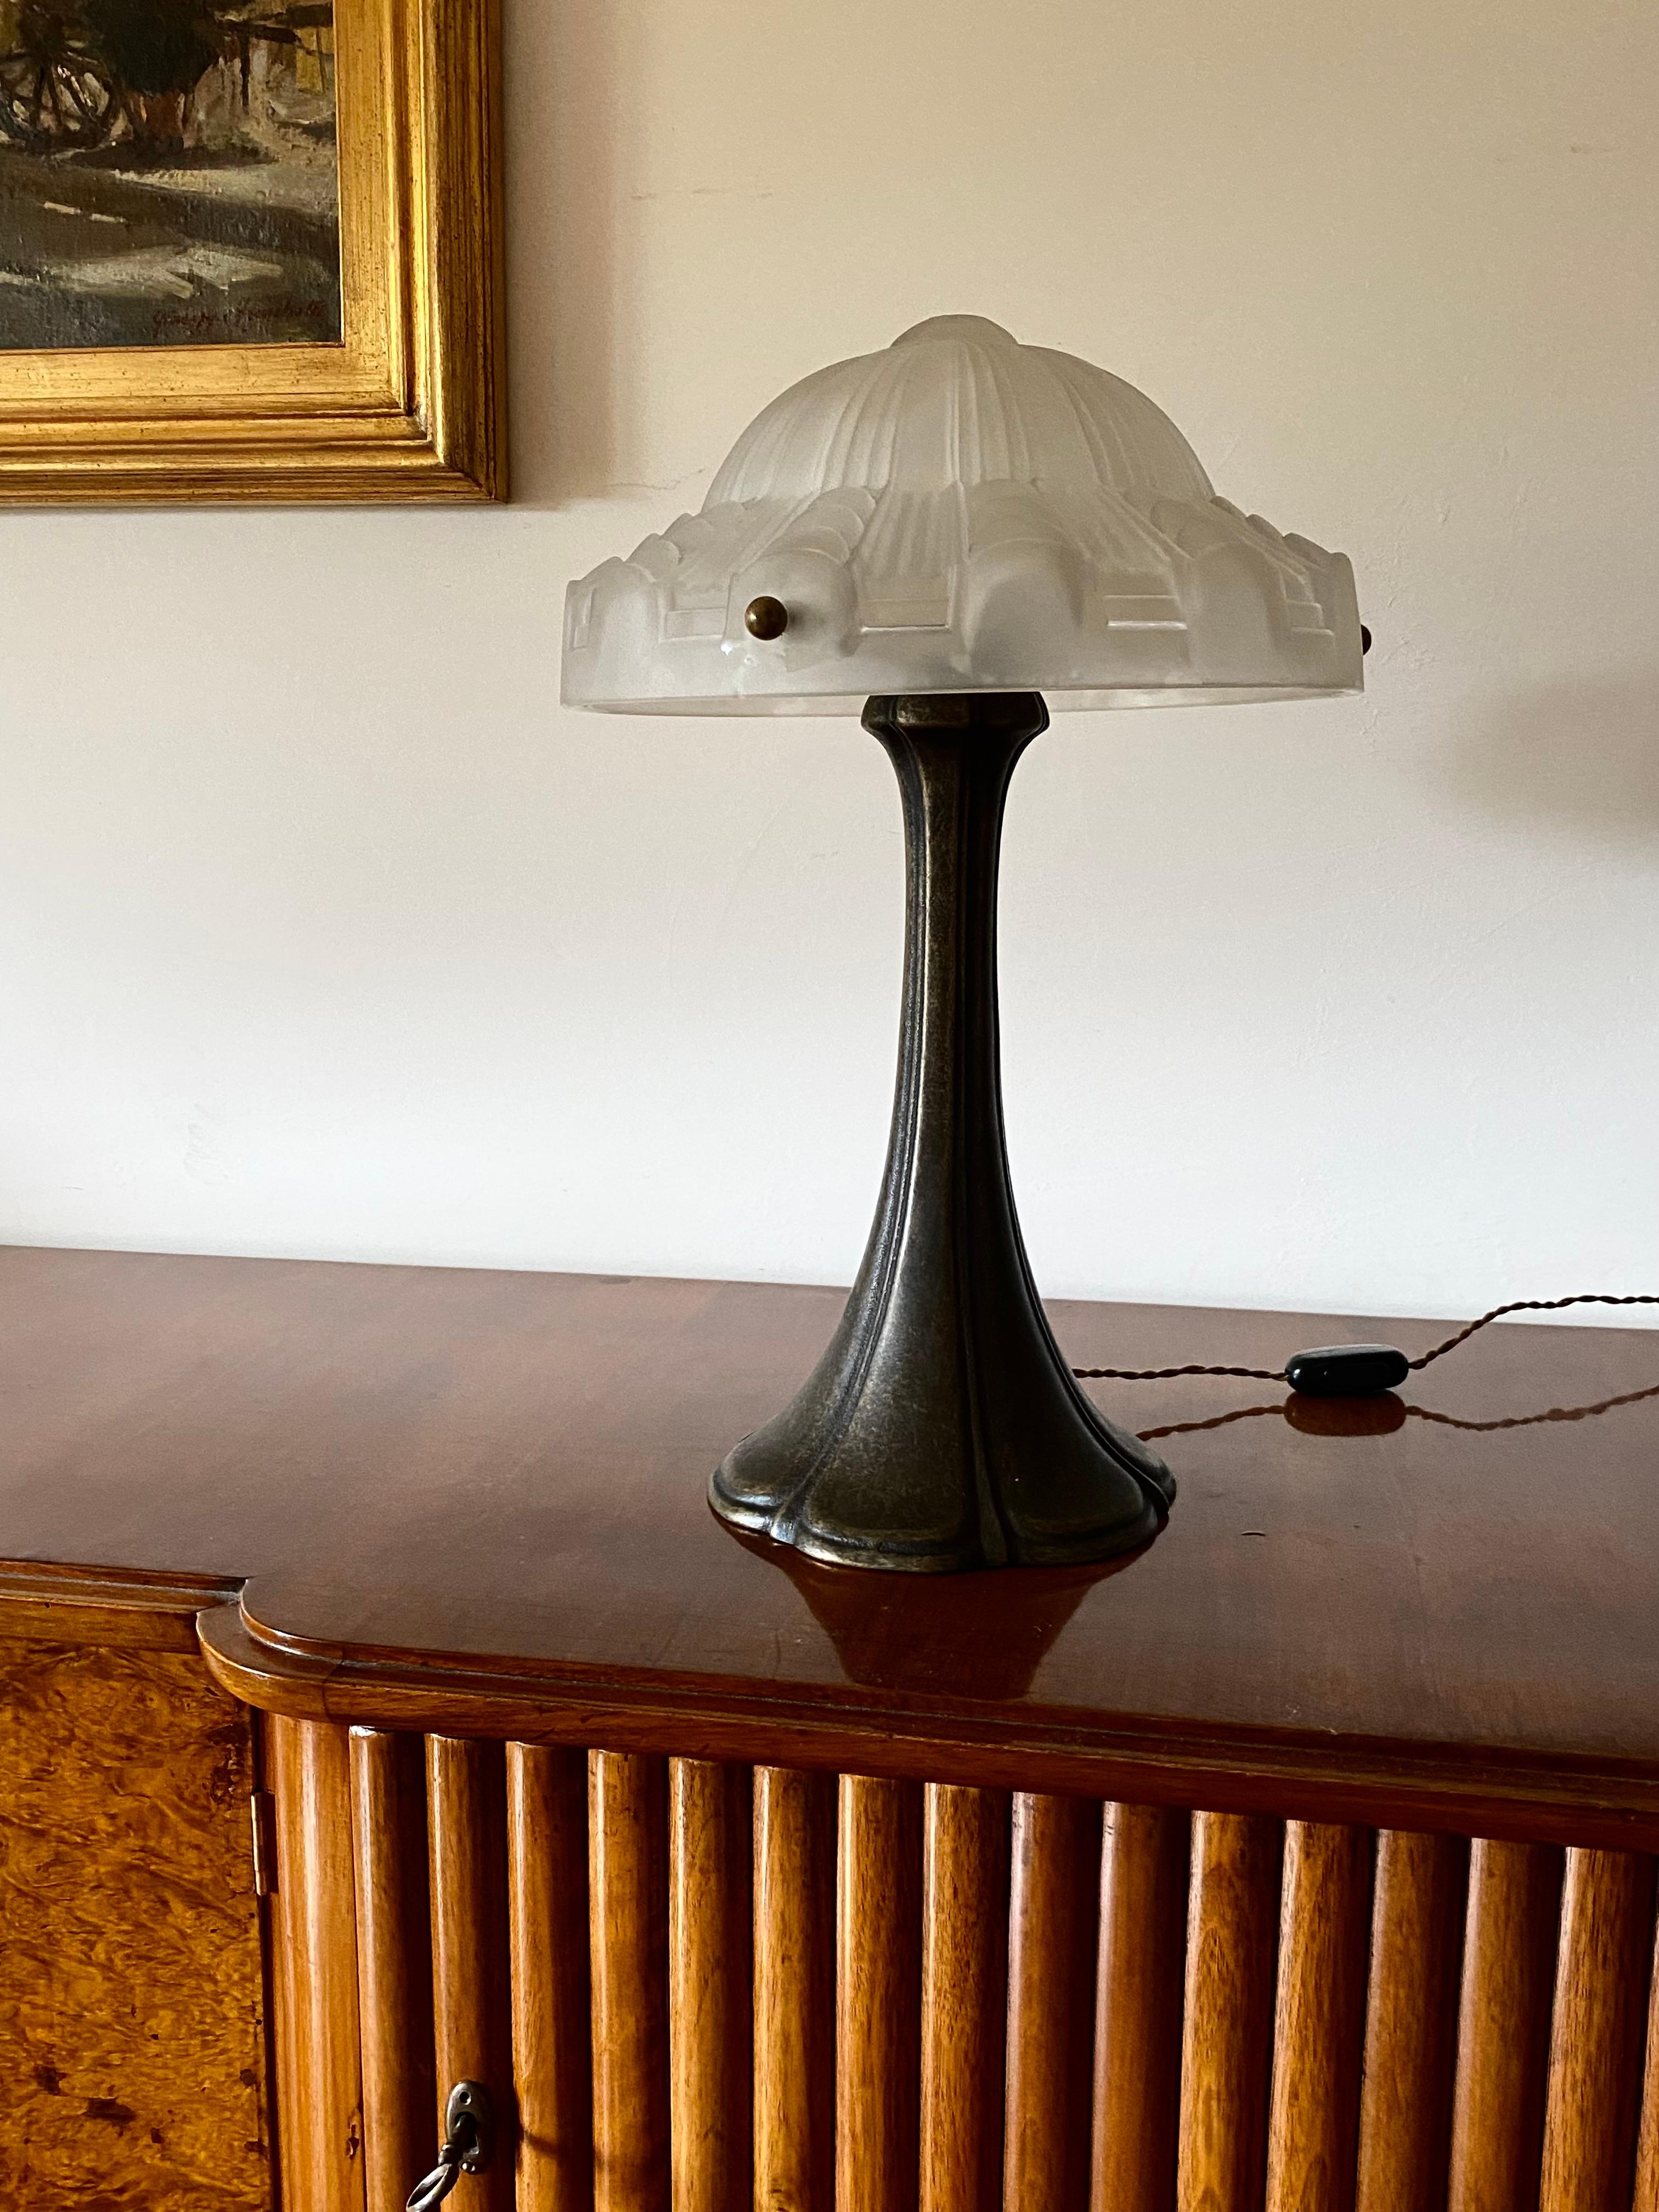 Importante lampe de table Art déco

France, vers les années 1930

Verre moulé et décoré

H 49 cm

Diamètre 35 cm

État : excellent, conforme à l'âge et à l'utilisation. Verre en parfait état. Fonctionnement parfait. 